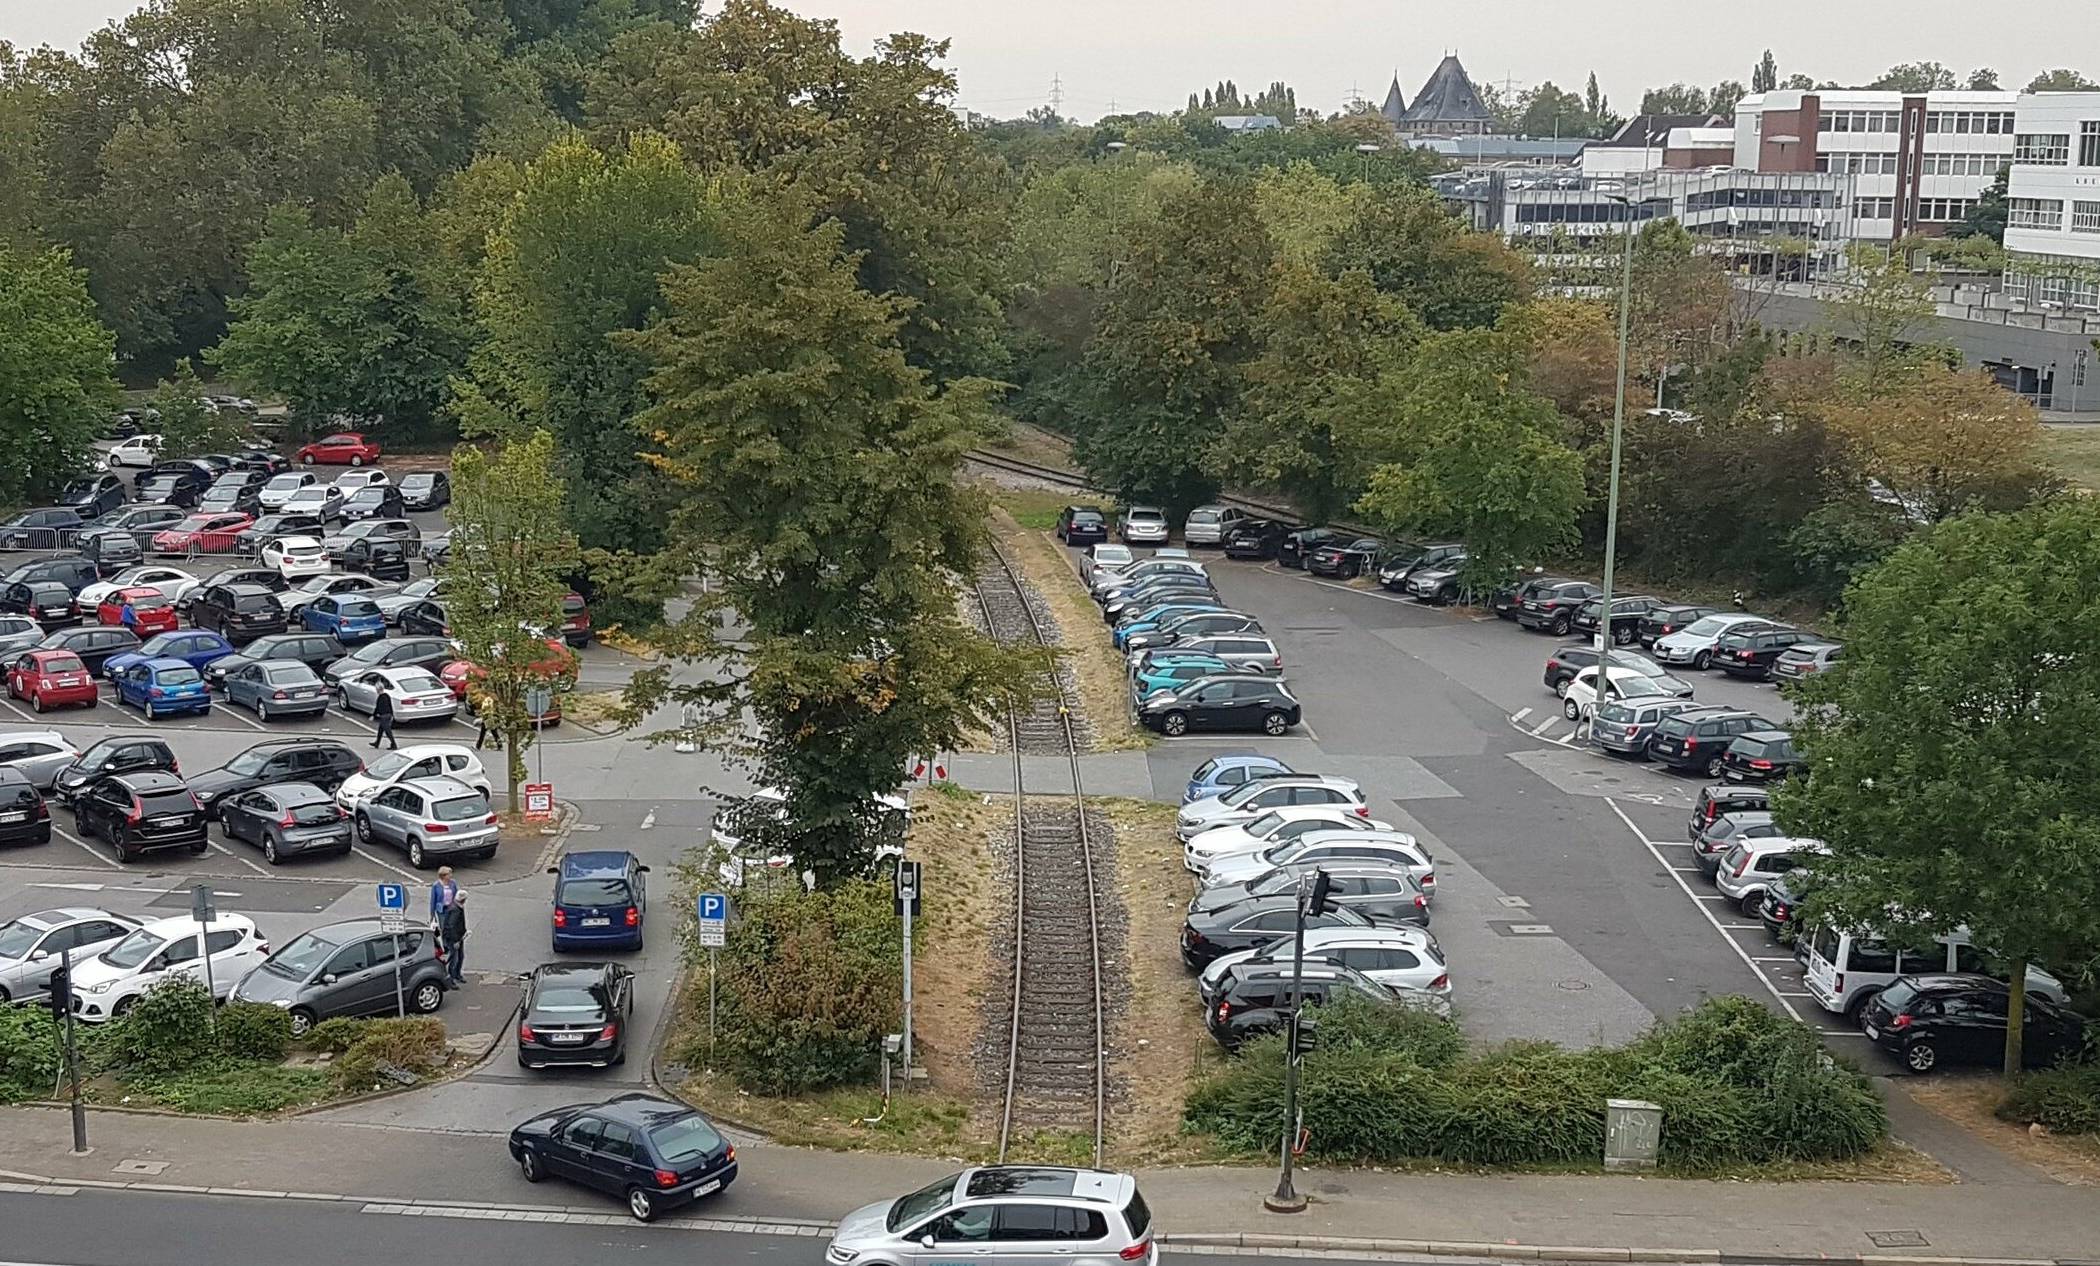  Der Wendersplatz an der Hammer Landstraße dient bisher als Parkplatz; als Bindeglied zwischen Hafen, Rennbahnpark und Neusser City soll er städtebaulich aufgewertet werden. 
  